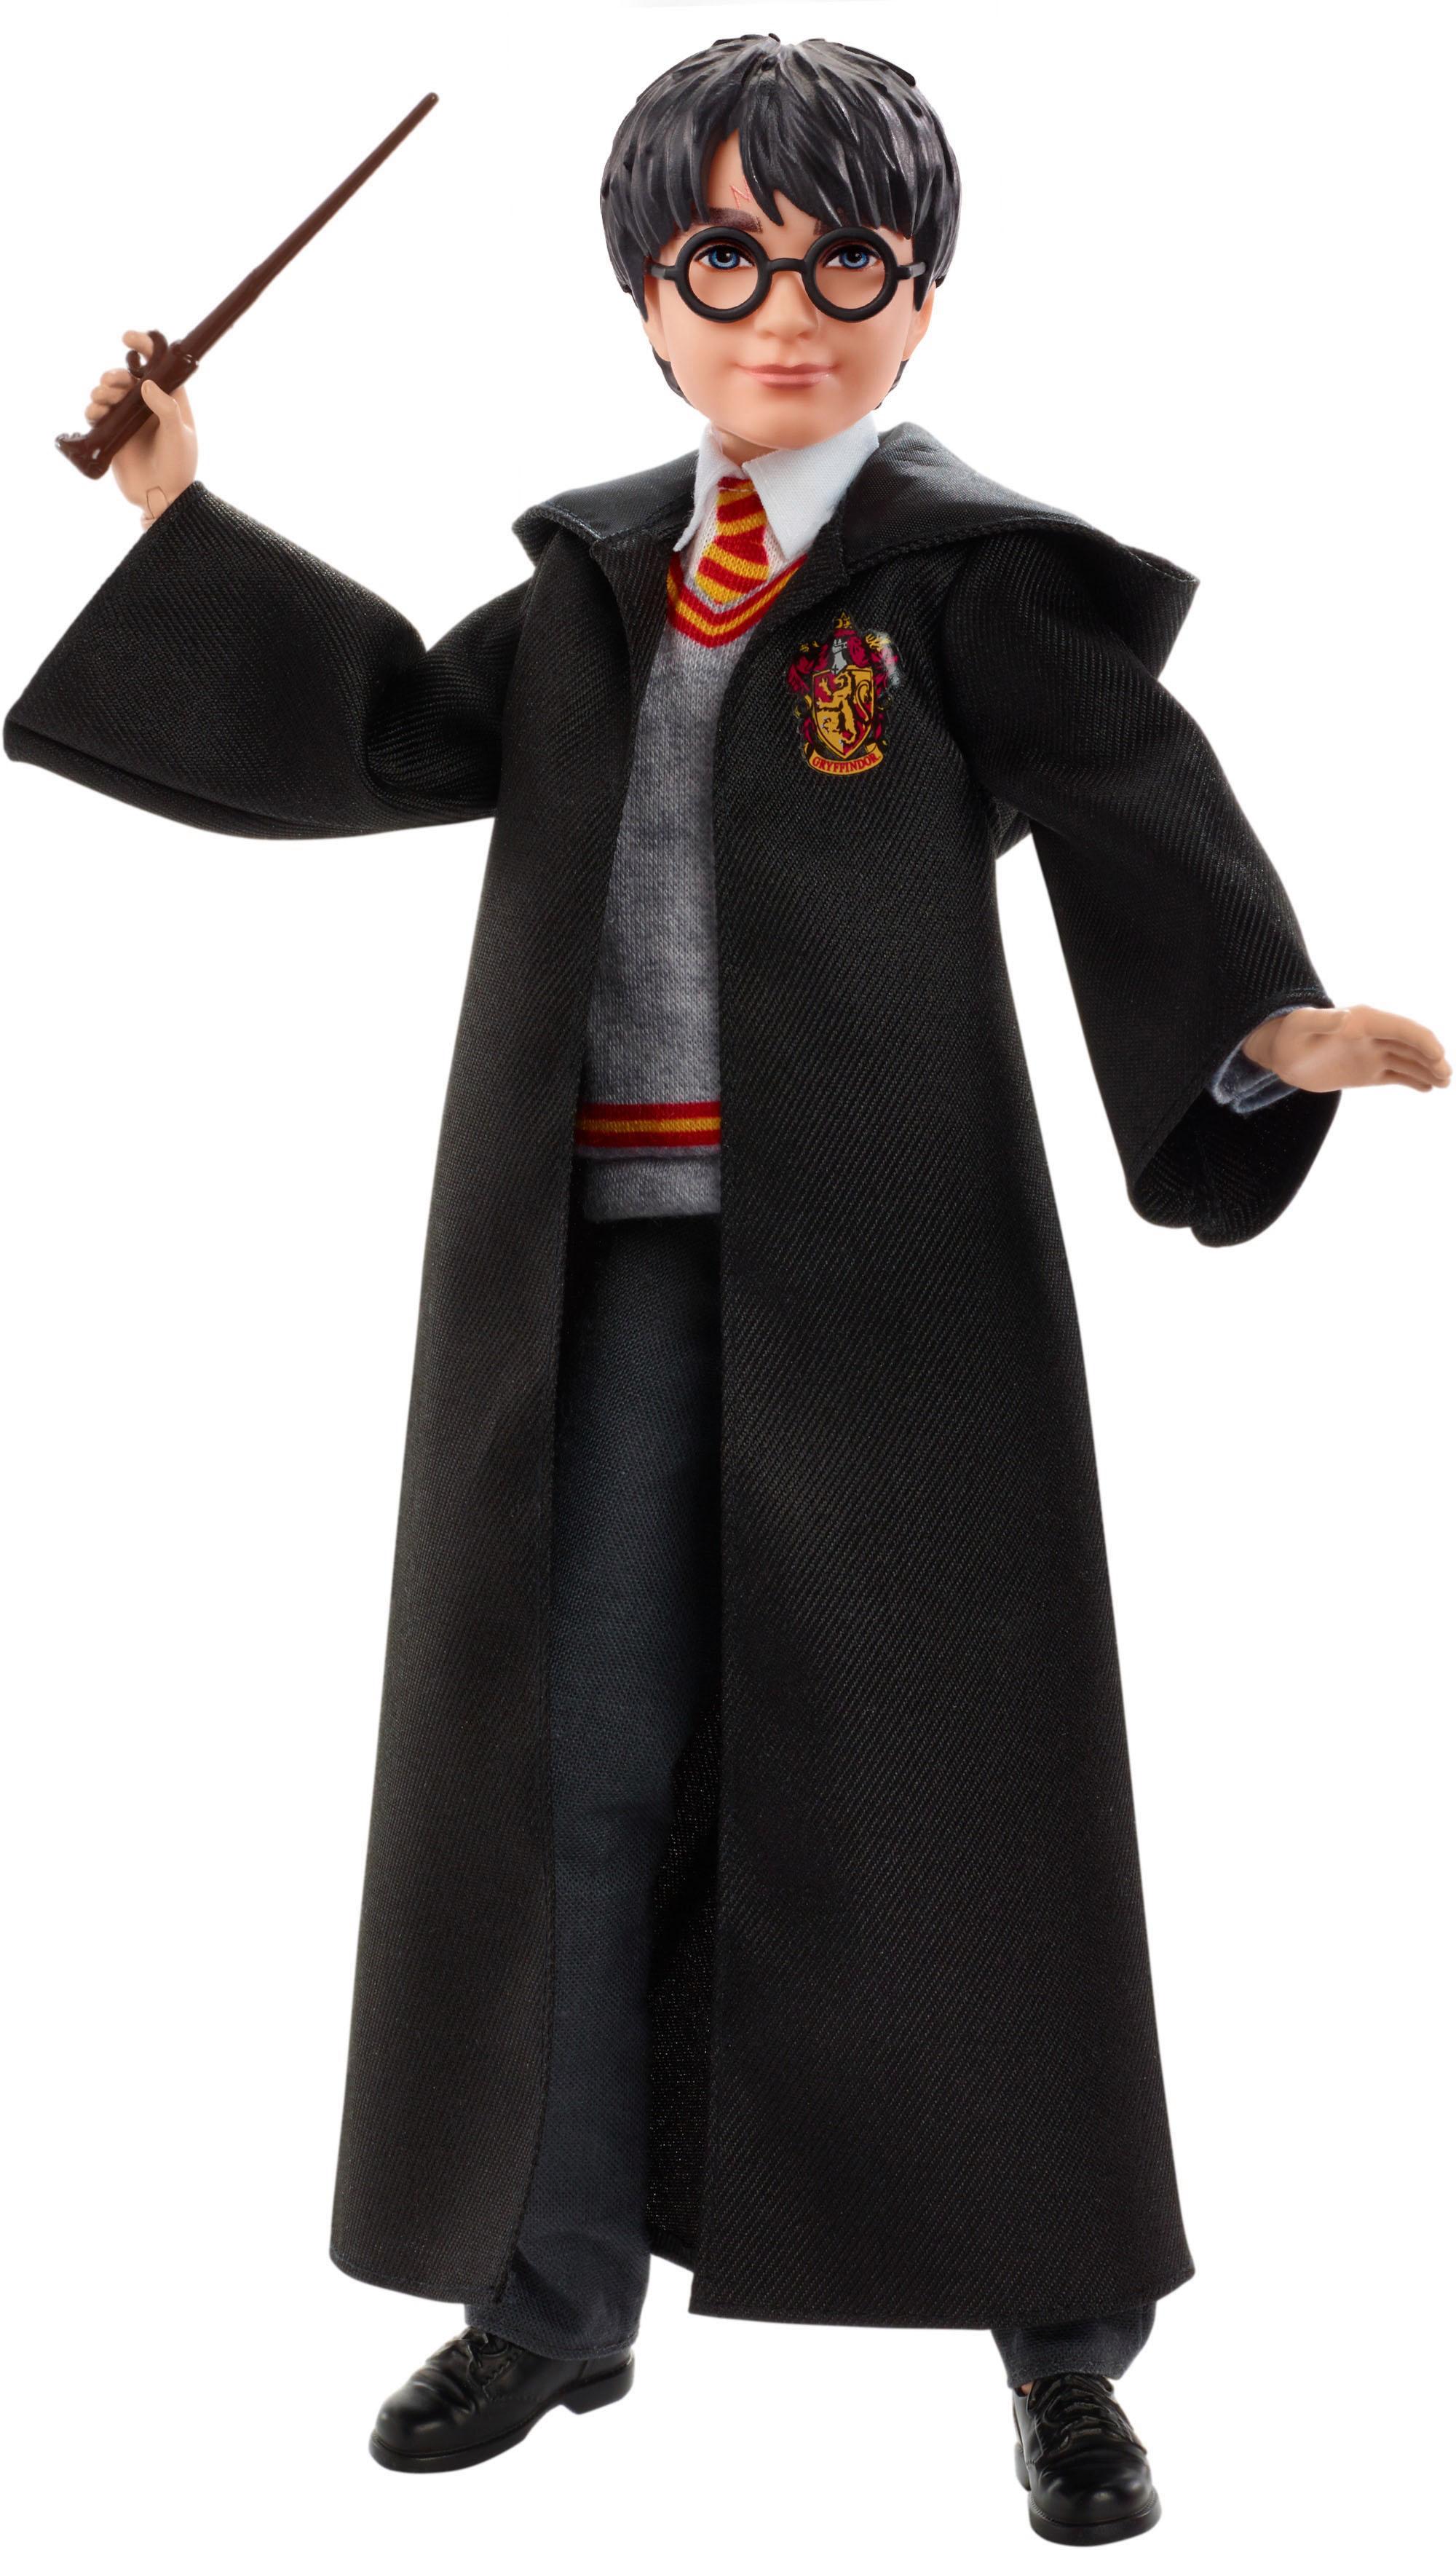 Mattel Puppe Harry Potter und Die Kammer des Schreckens - Harry Potter